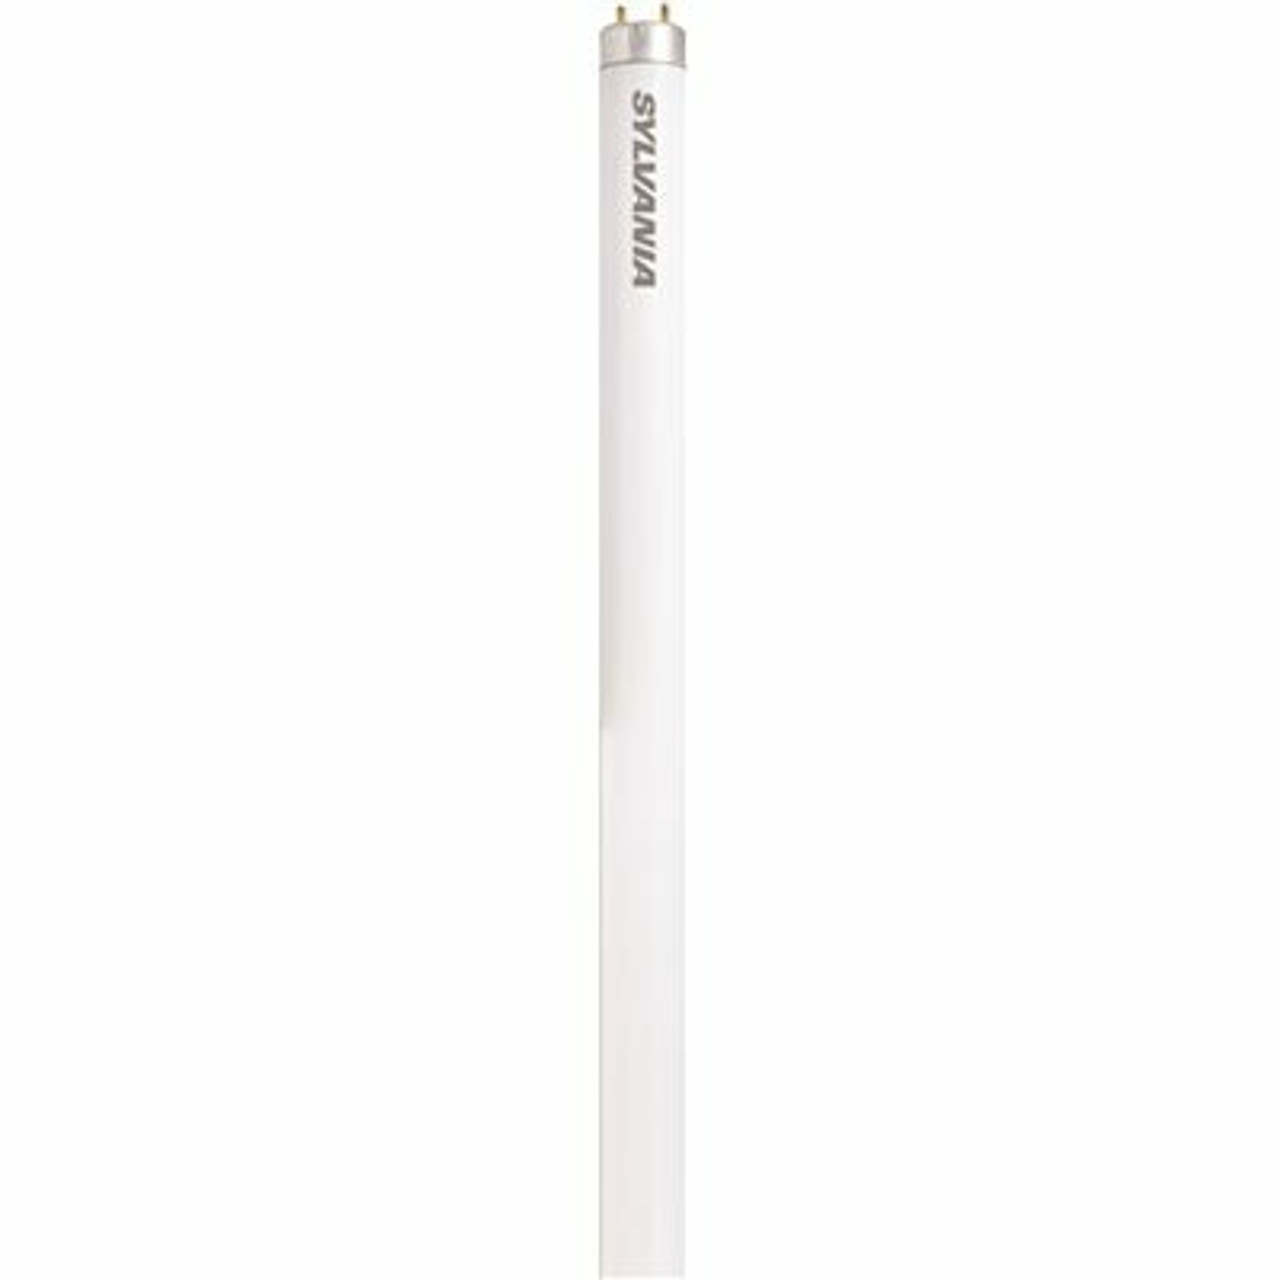 Sylvania 18 In. 15-Watt Linear T12 Fluorescent Tube Light Bulb, Cool White (1-Bulb)